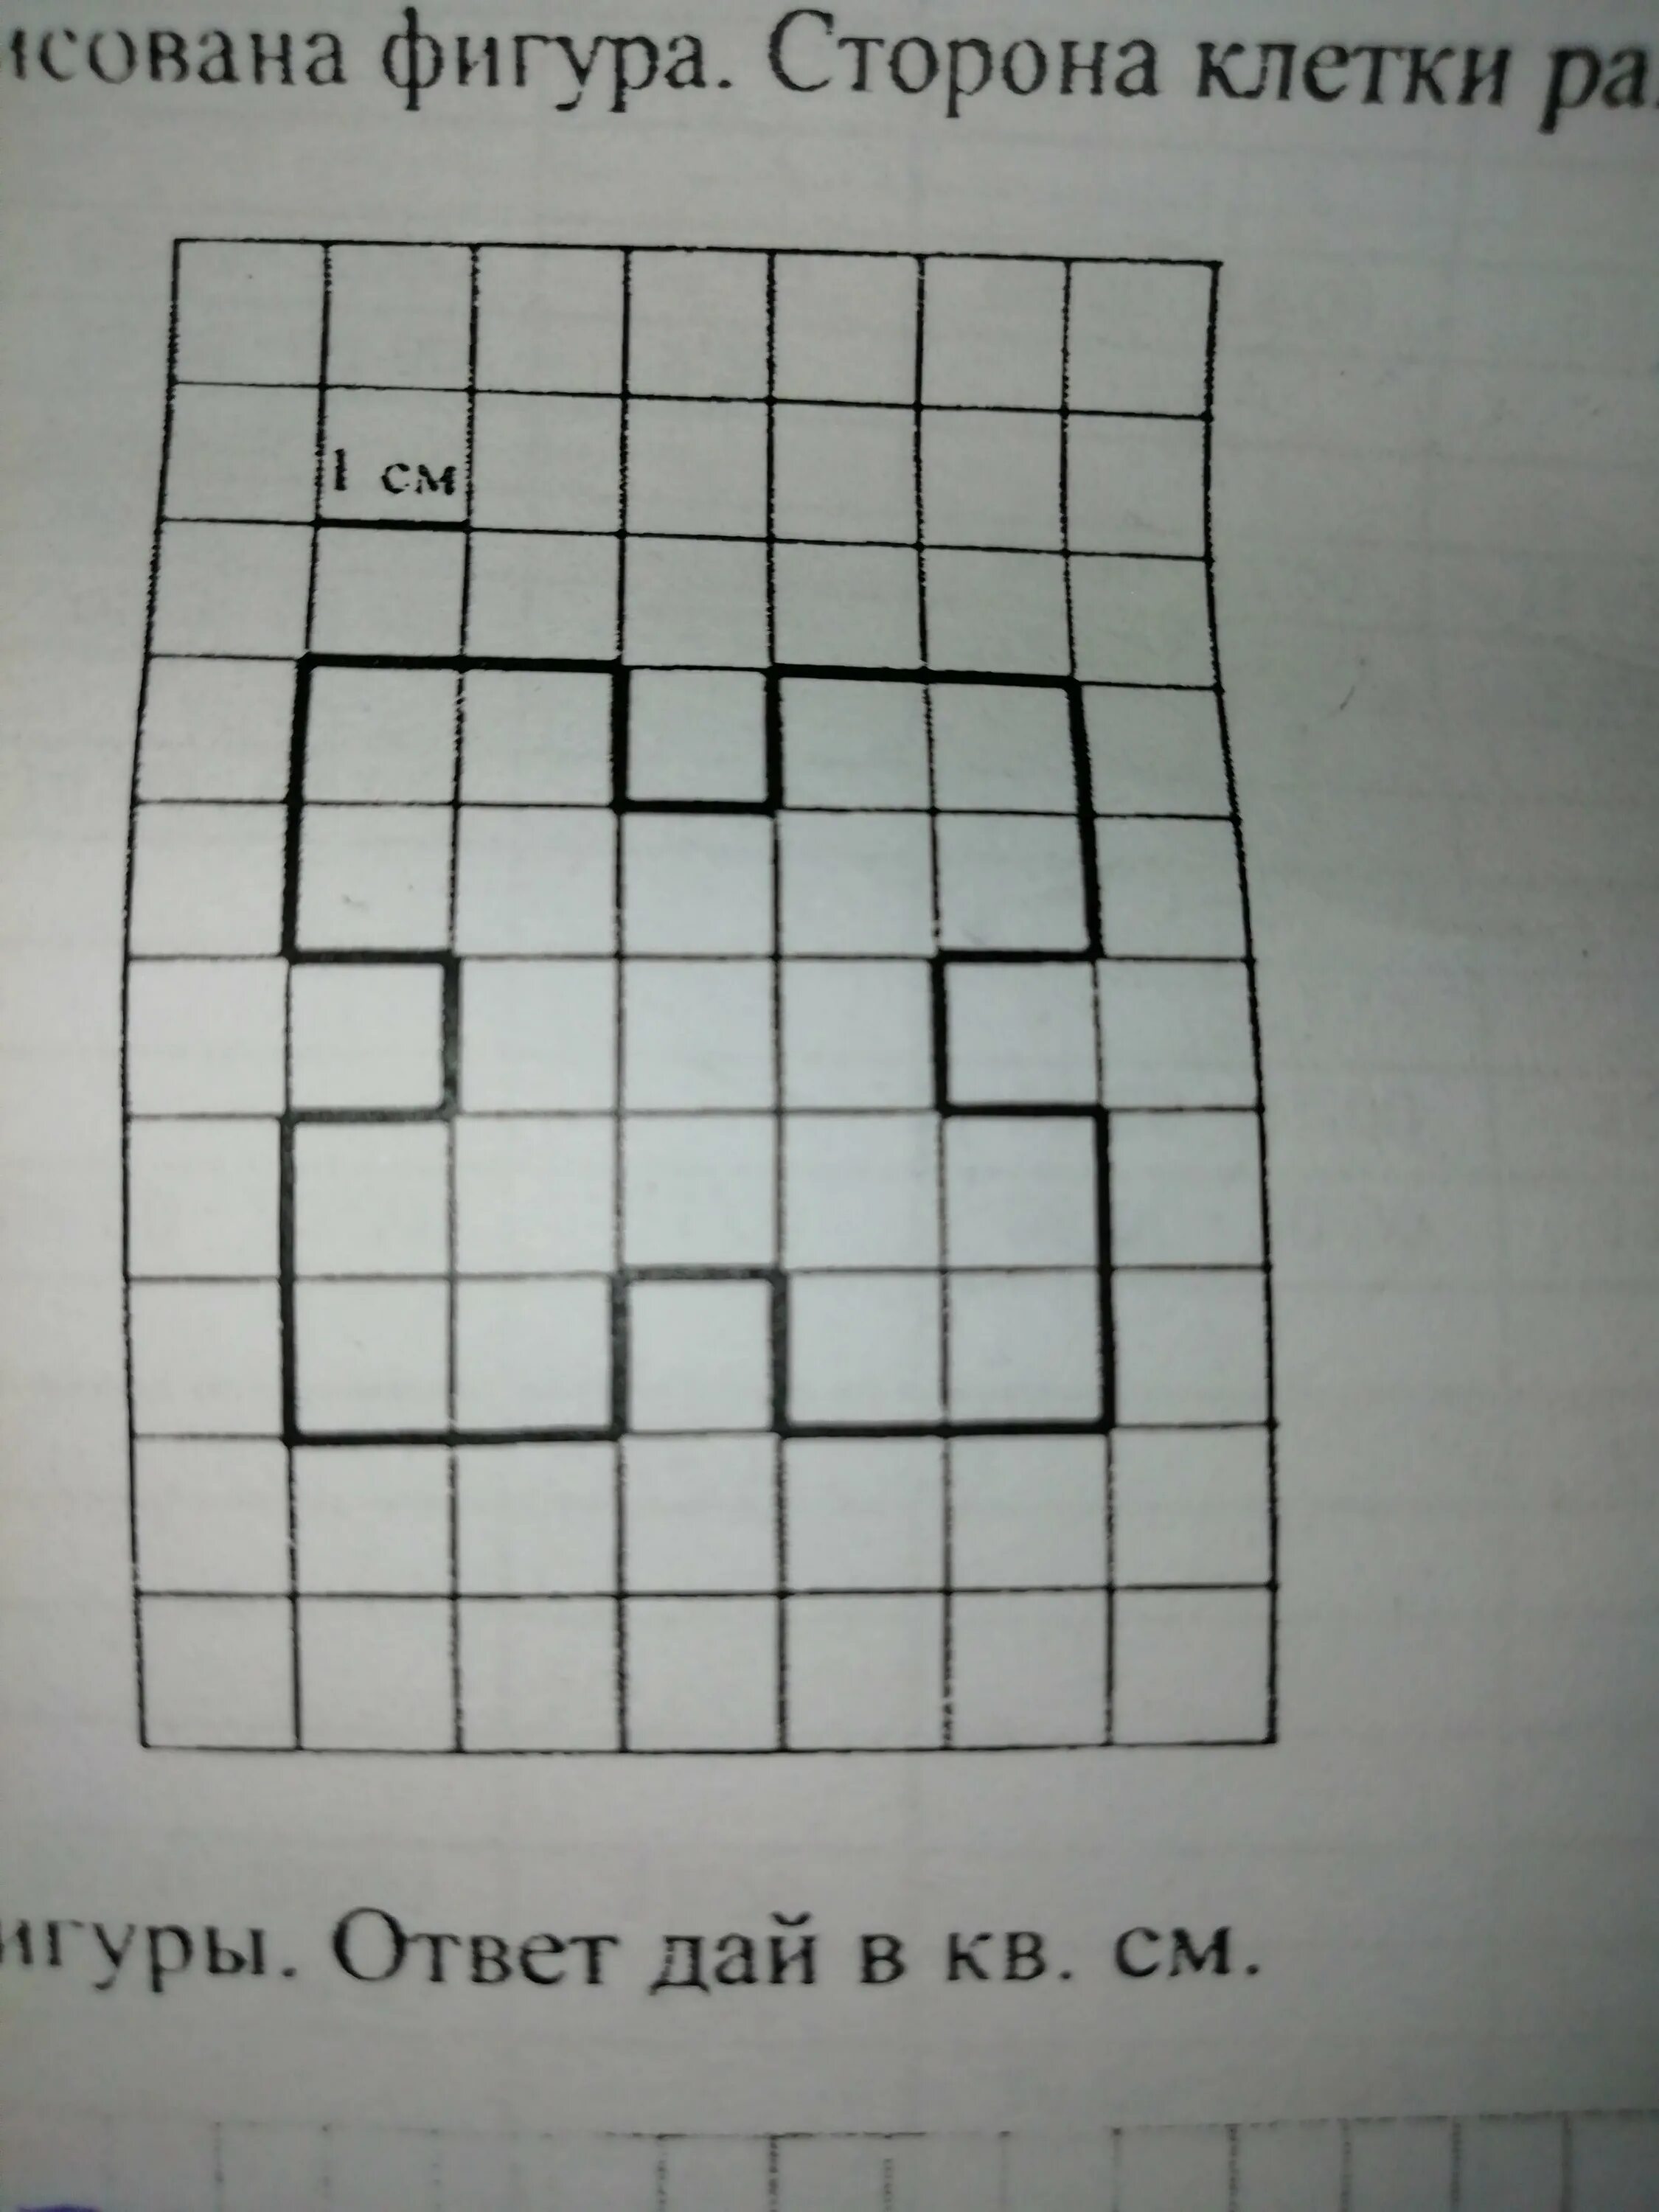 Площадь прямоугольника 4 класс математика впр. Сторона клетки равна 1 см. Найди площадь этой фигуры. Найдите площадь фигуры по клеткам. Площадь прямоугольника по клеточкам.